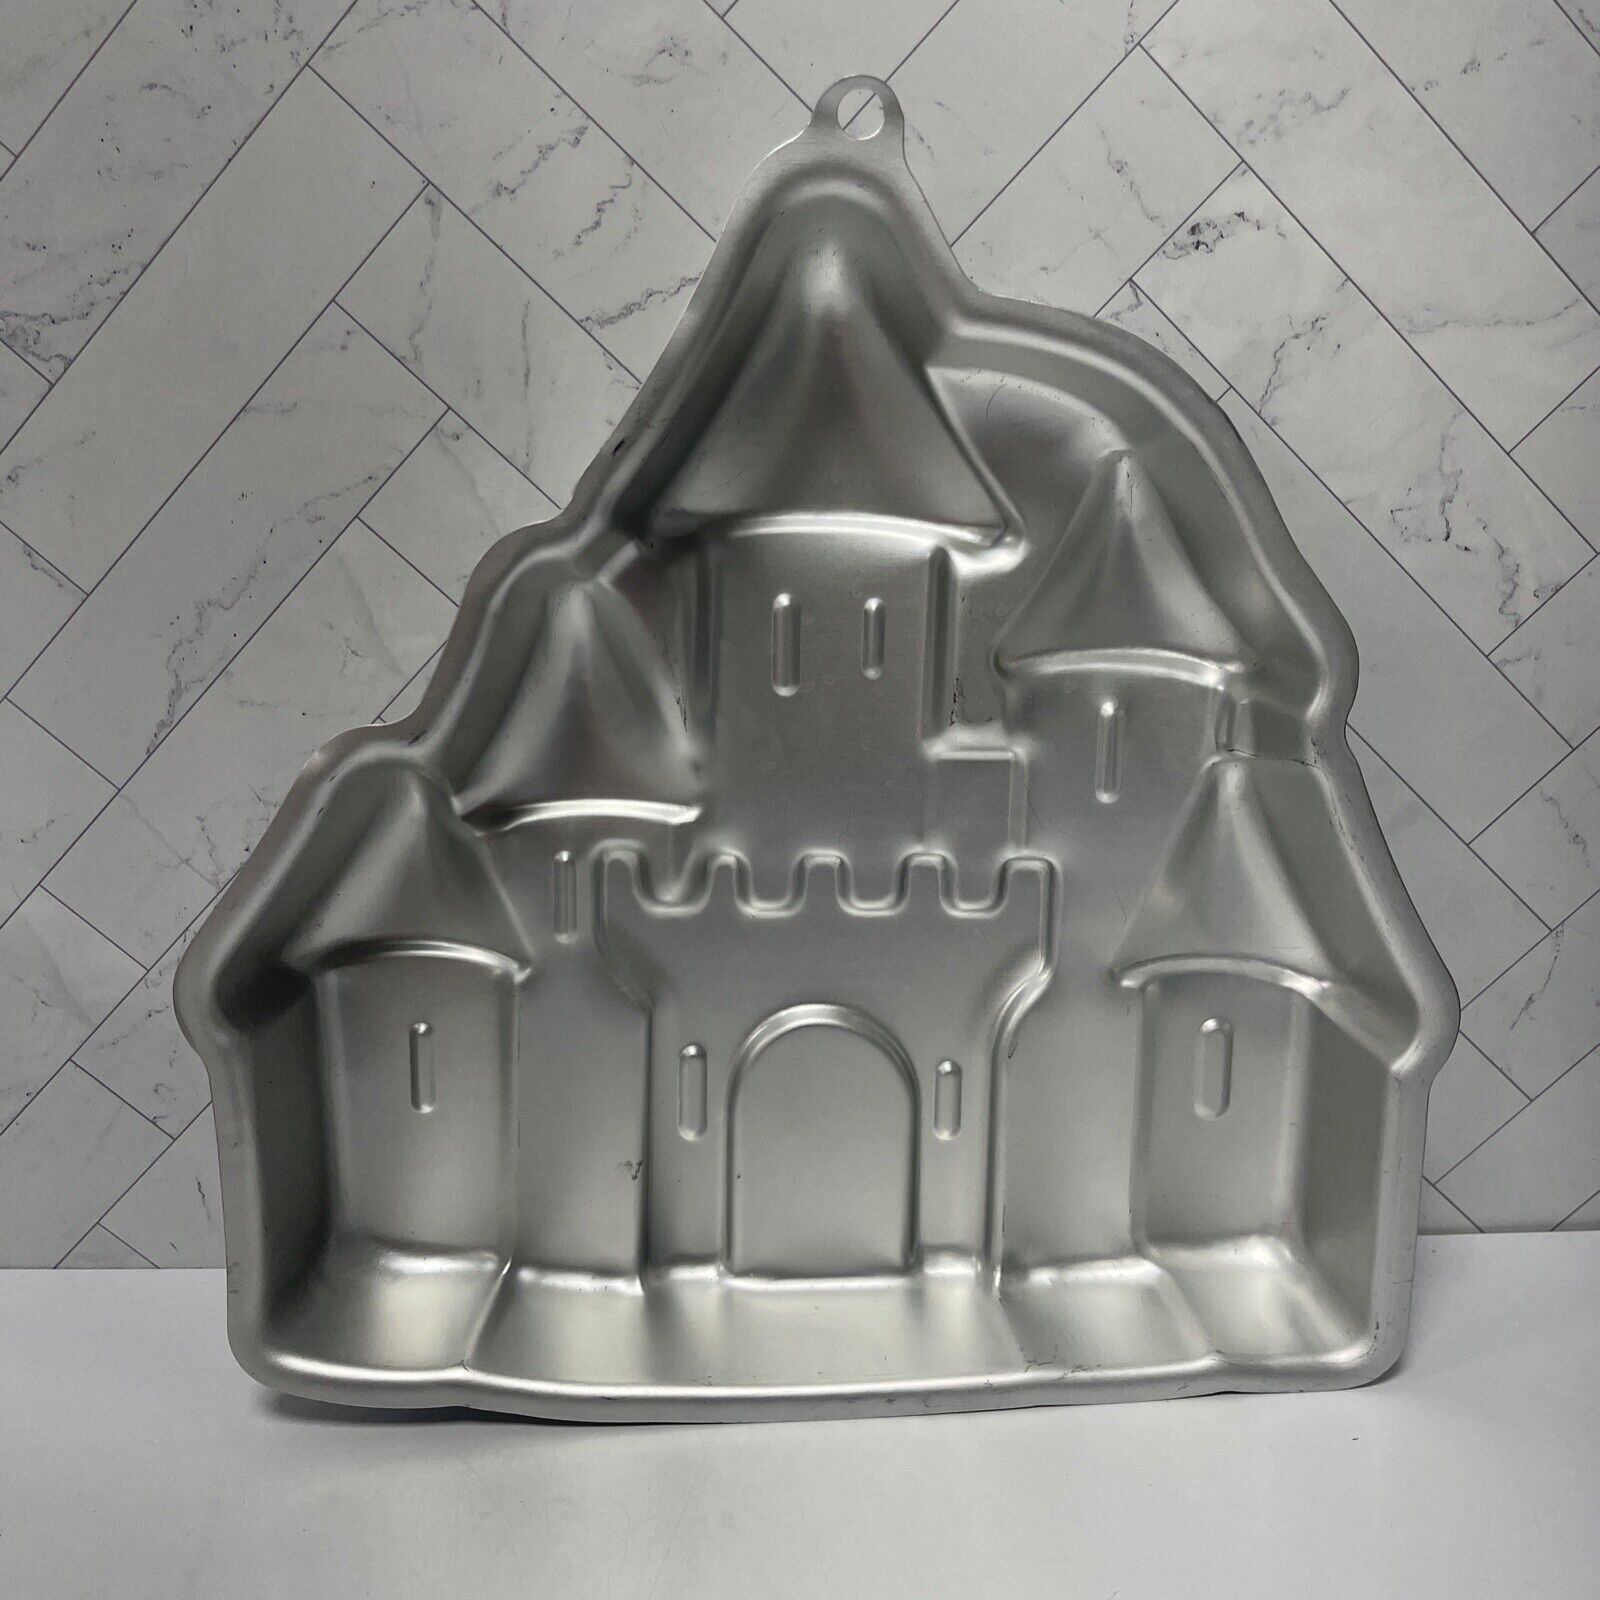 Princess Castle Magical Wilton Silver Cake Tin 1998